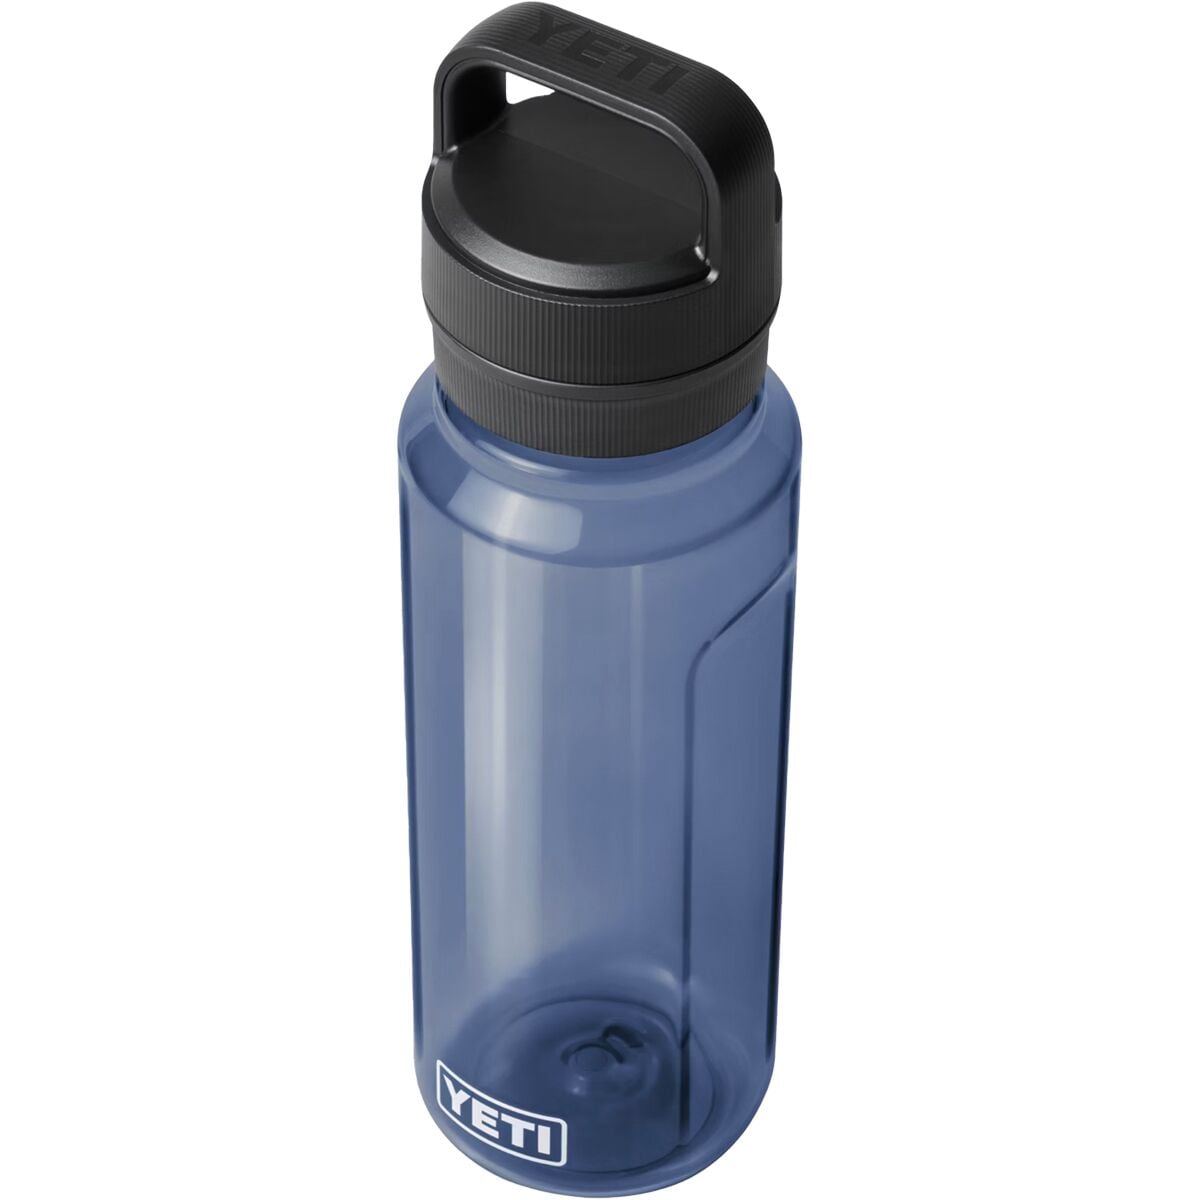 Lot of 4 Water Bottles Yeti Hydro Flask Camelback Miir Patagonia #686